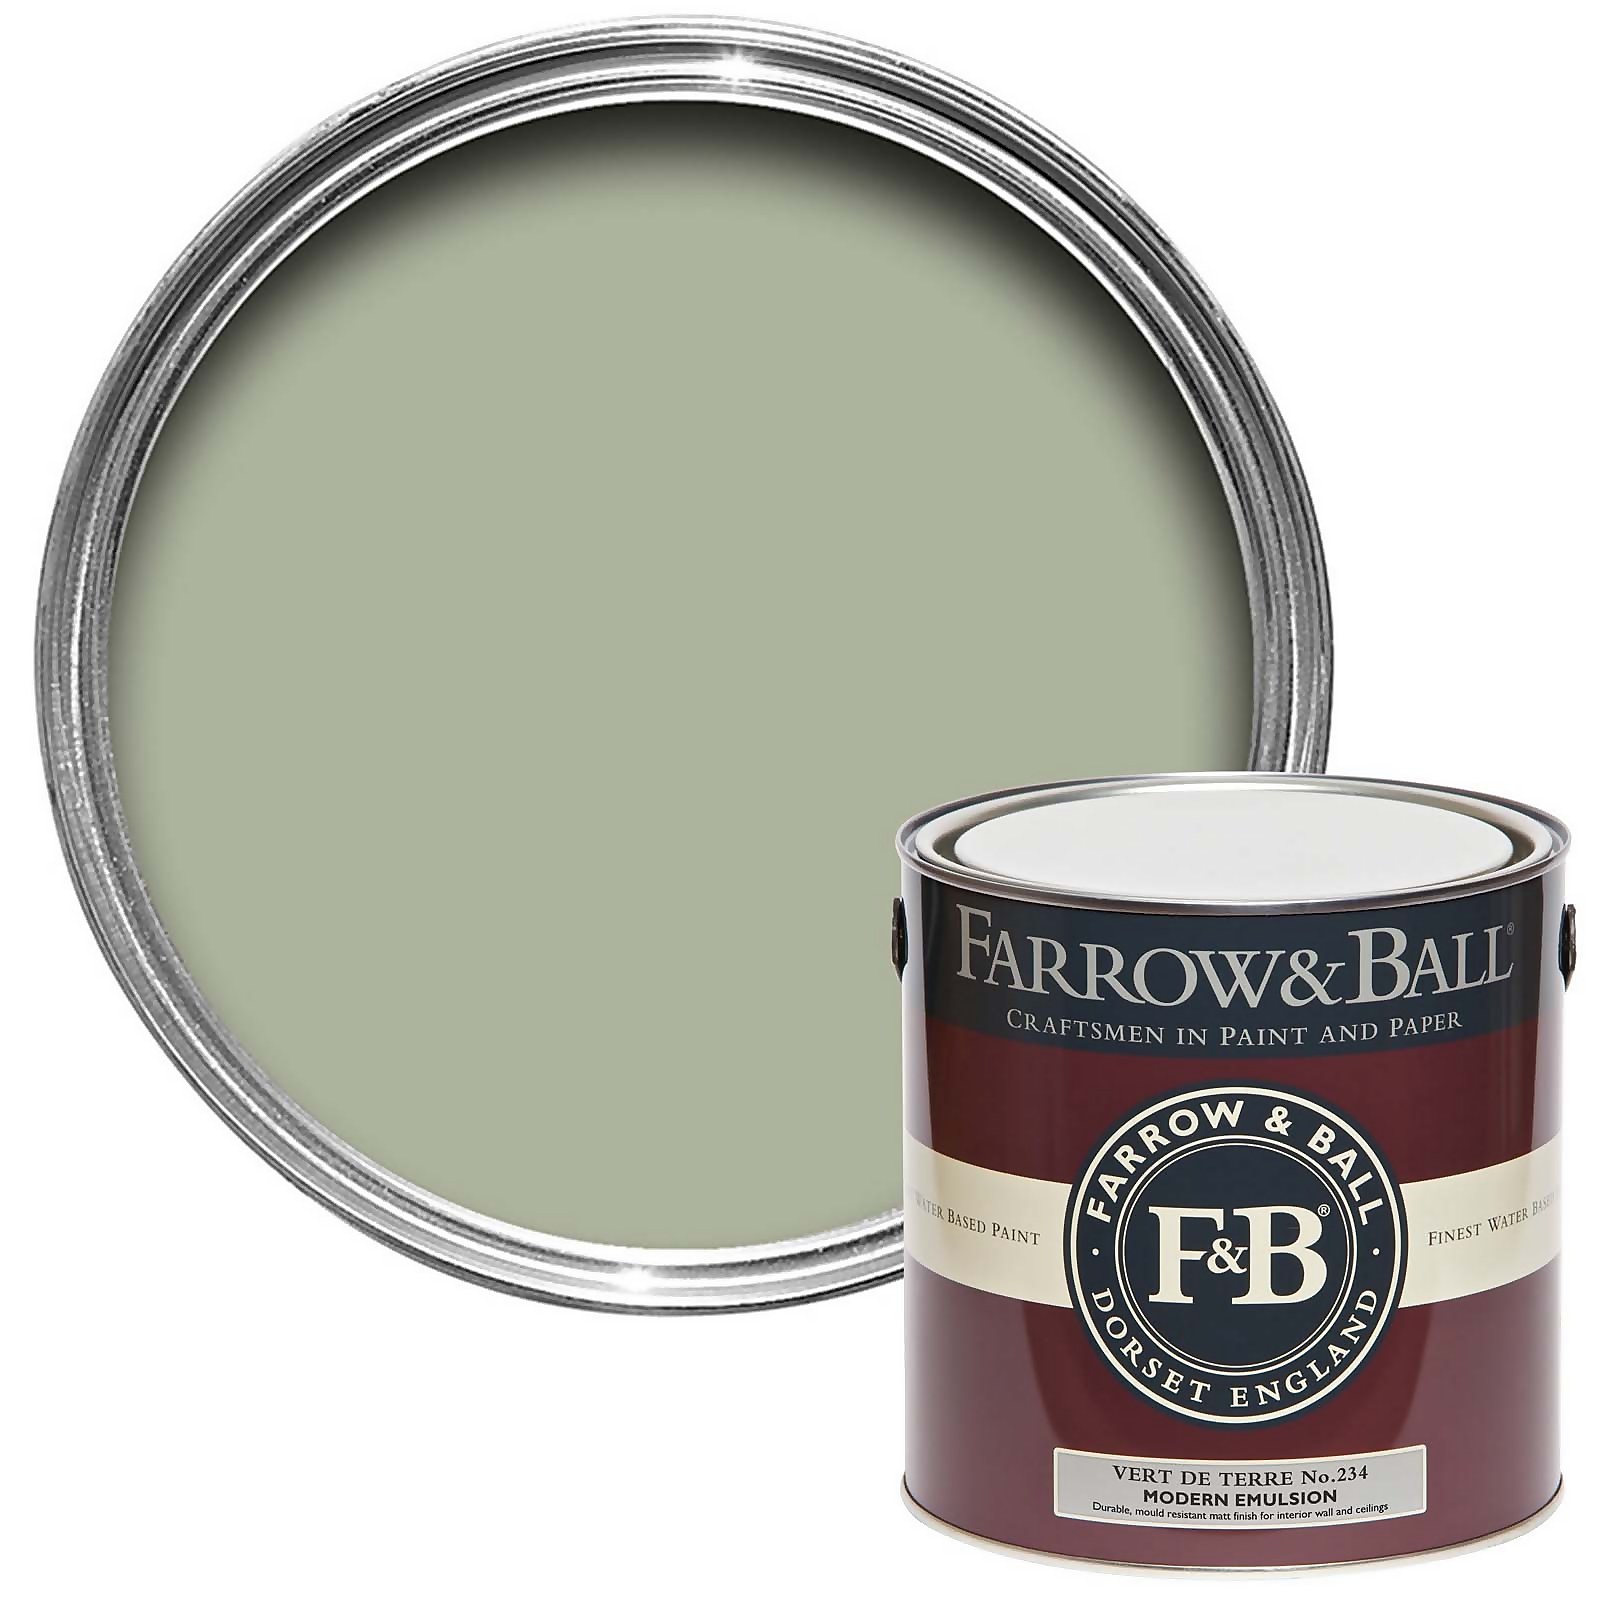 Farrow & Ball Modern Matt Emulsion Paint Vert De Terre No.234 - 2.5L